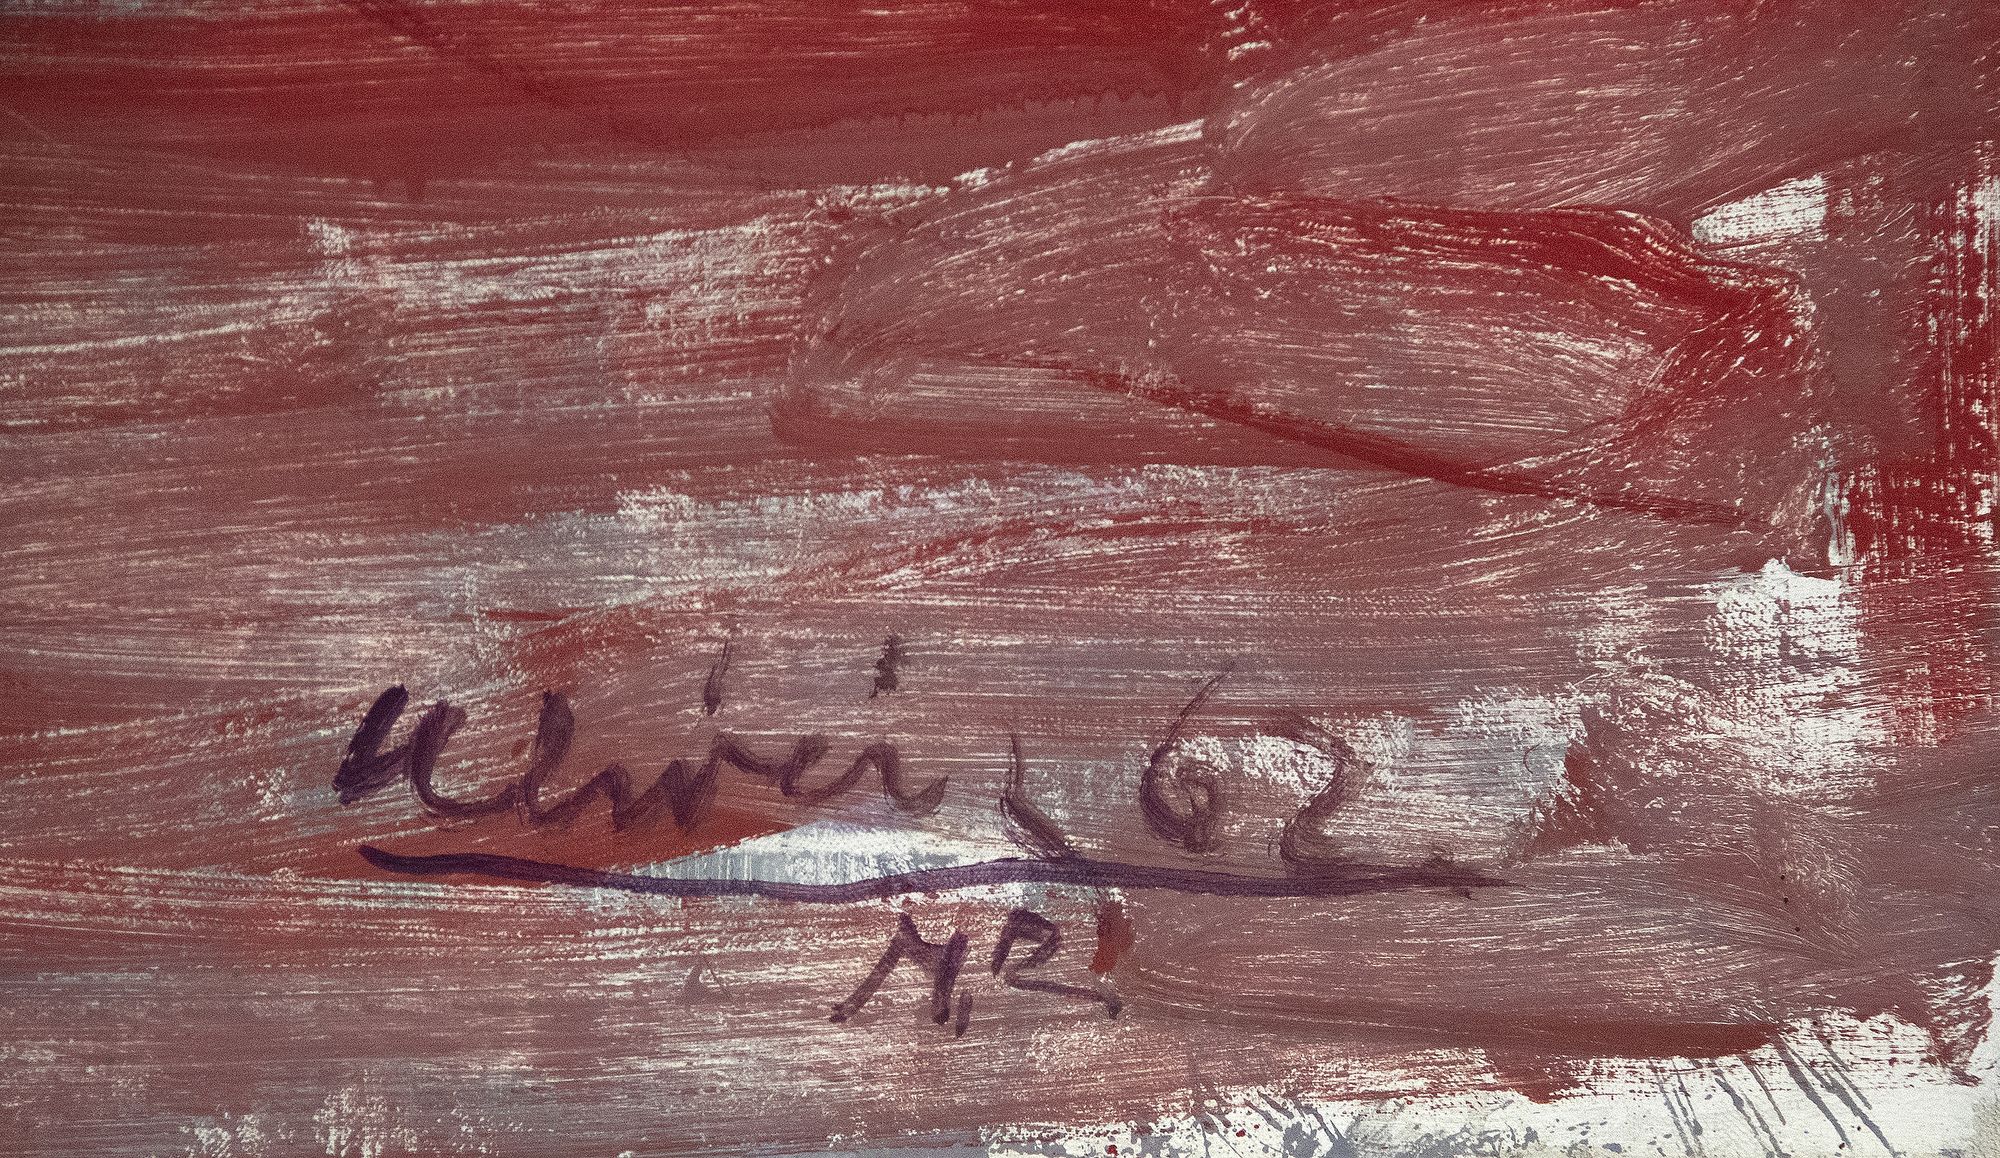 Nathan Olivera wird oft mit den figurativen Malern der Bay Area in Kalifornien in Verbindung gebracht, aber in Wirklichkeit zeigt sein Werk sein Interesse an Willem de Kooning, Alberto Giacometti und Francis Bacon. Diese Einflüsse sind die hervorstechenden Merkmale von Nude Stepping from the Carpet. Dieses Gemälde, das Olivera mit Anfang 30 gemalt hat, ist genau die Art von Gemälde, die seinen frühen Ruf für eindringliche Darstellungen von isolierten Figuren in einem improvisierten Stil begründet hat. Oliveiras späteres Werk spiegelt de Koonings einflussreiche Bemerkung über die Herausforderung wider, visuelle Erinnerungen zu malen und Figurationen zu schaffen, die eine schwache Präsenz haben, doch die starke Horizontlinie, die dieser Landschaft zugrunde liegt, verleiht der Figur eine körperlichere Präsenz als üblich.